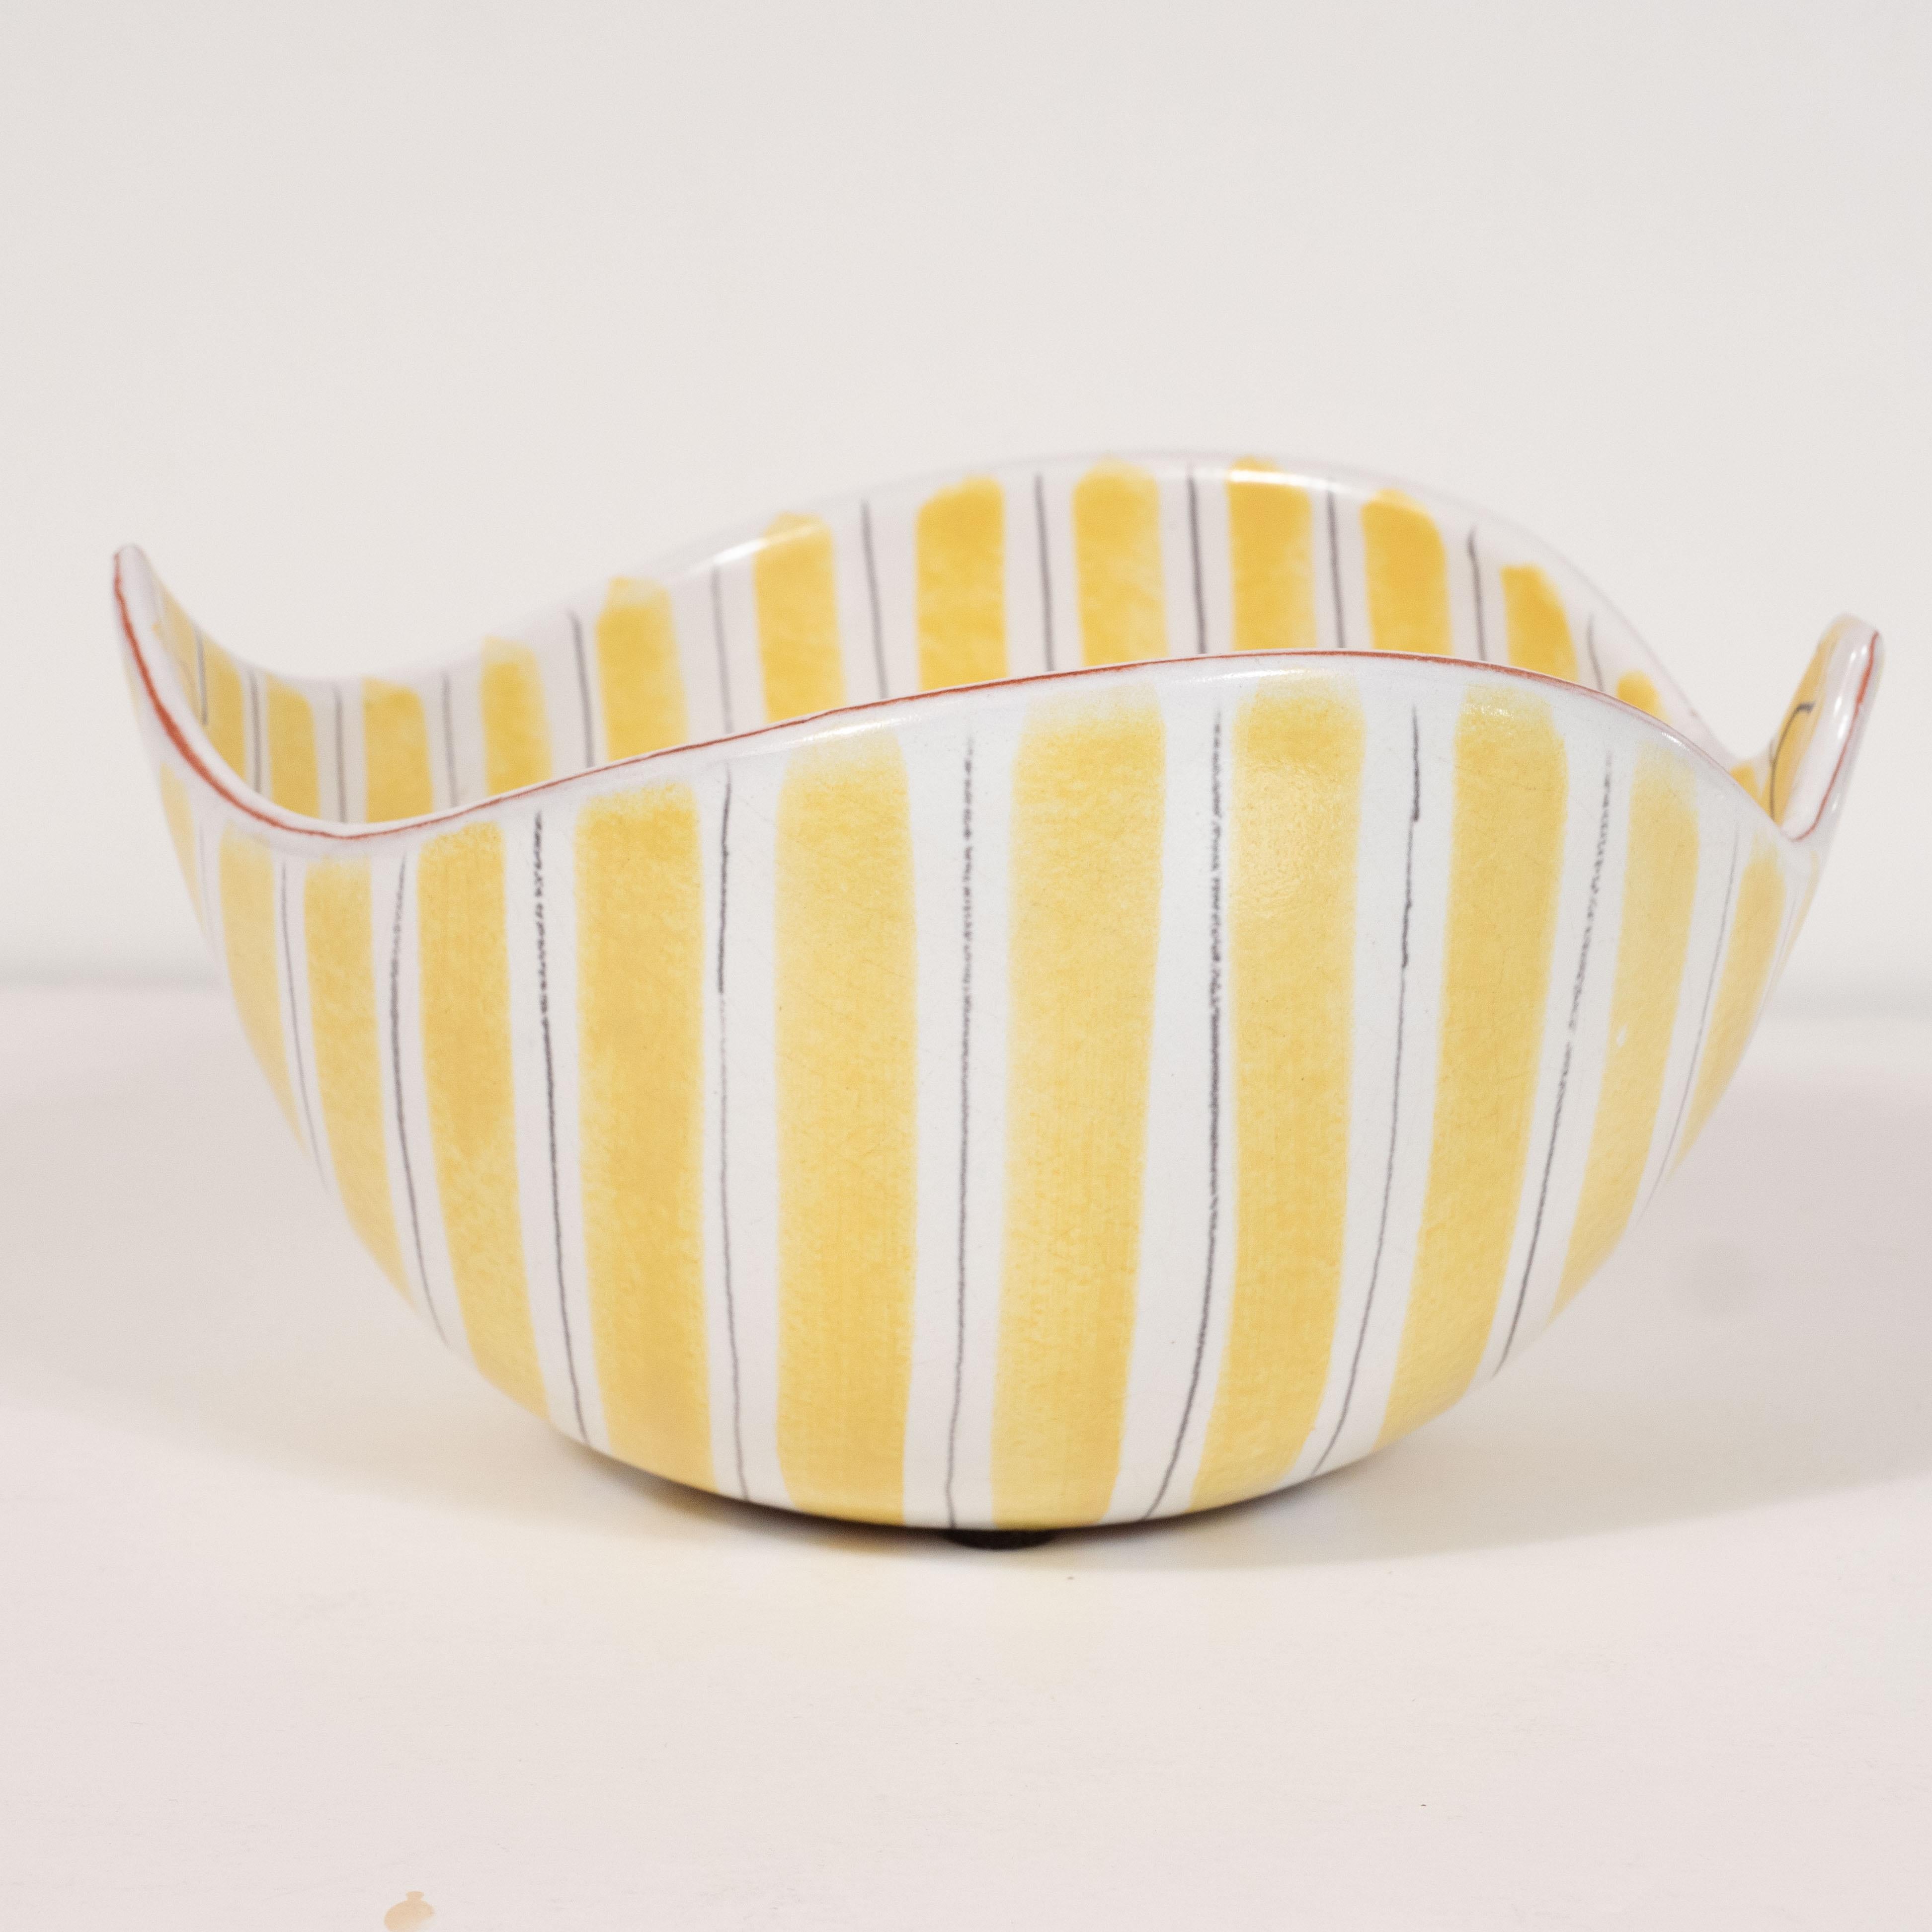 Mid-Century Modern Hand-Painted Striated Ceramic Bowl by Per Linnemann-Schmidt 1